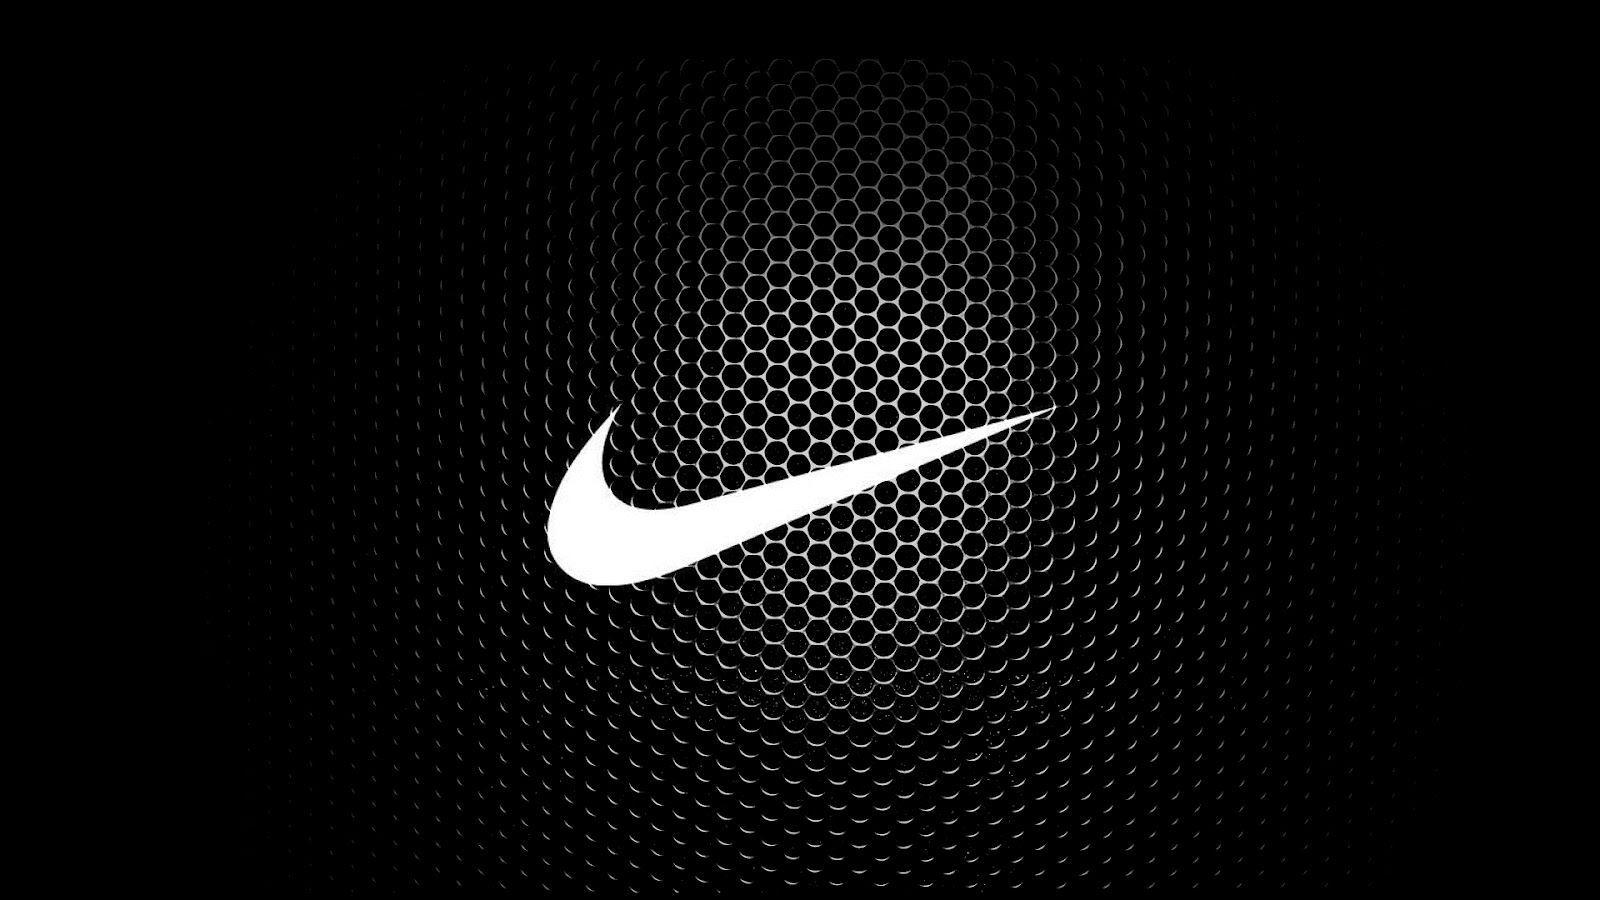 Cool Nike Logo - Nike Logo - Logos Pictures | Brands/Logos in 2019 | Nike wallpaper ...